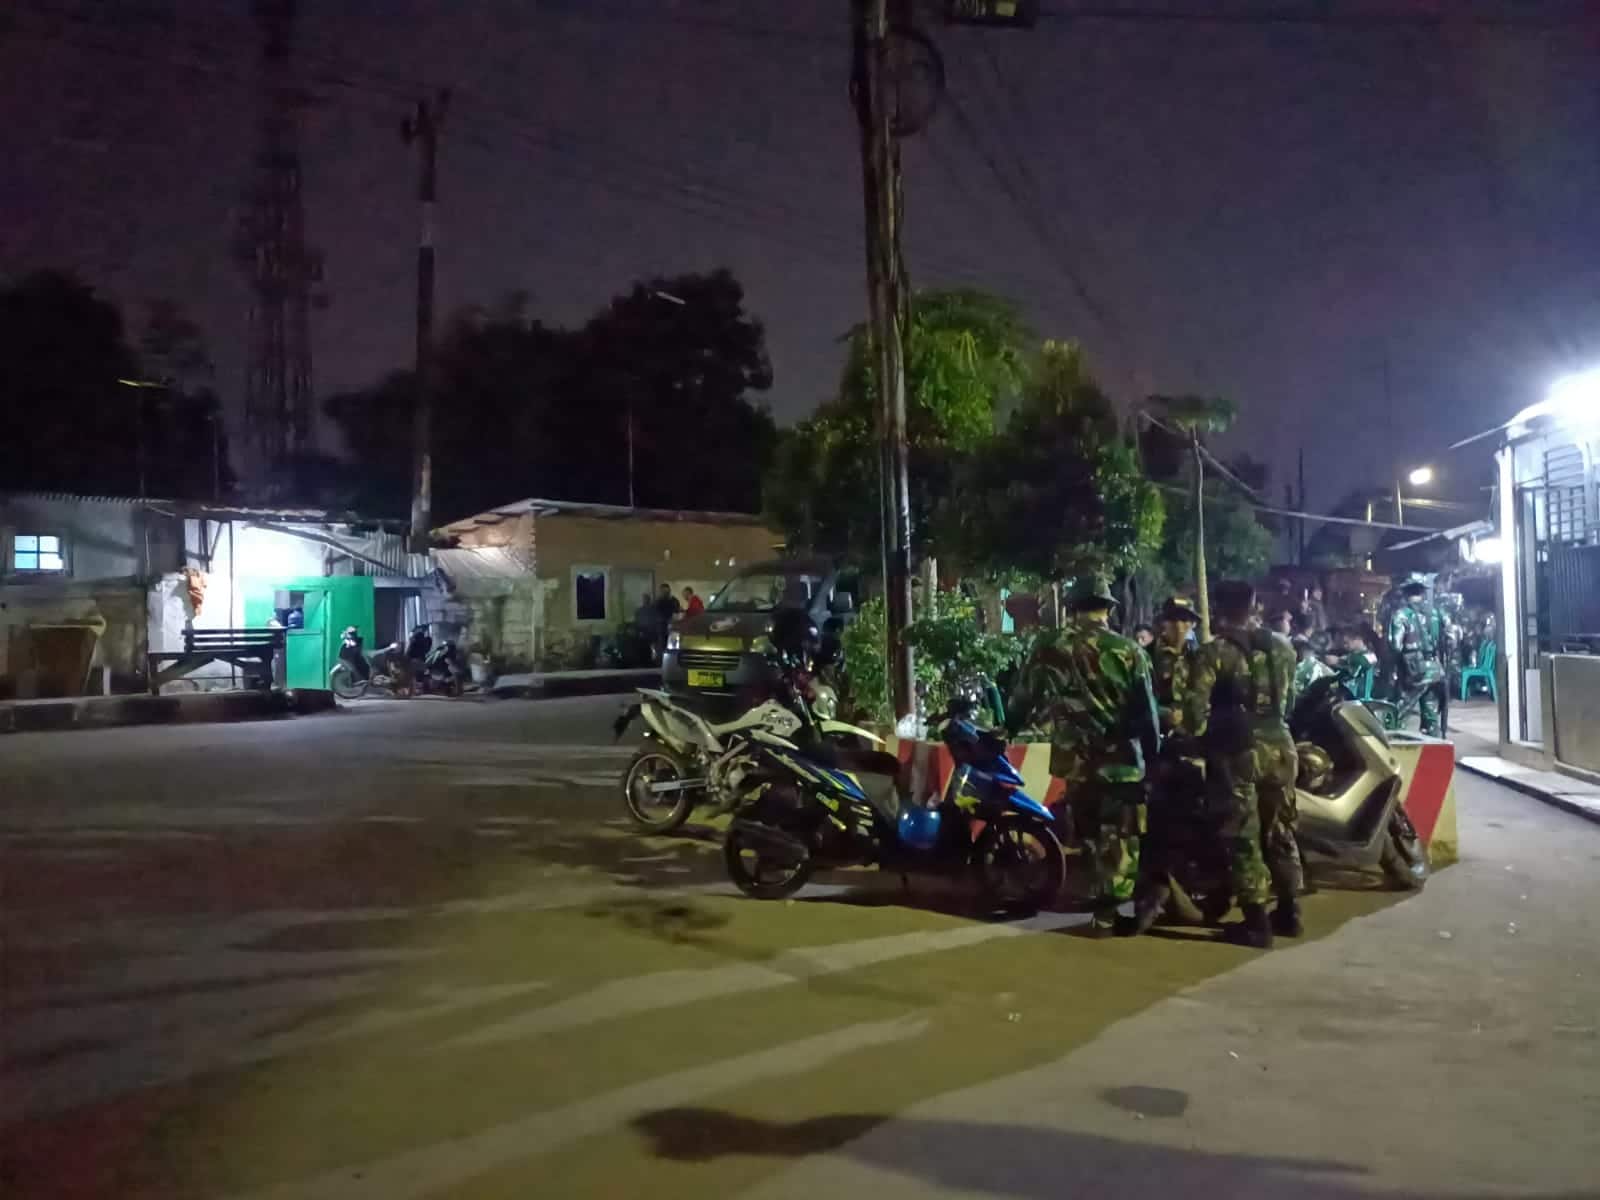 Arhanudse Patroli di Kriyan Timur Cirebon, Bawa Senjata Lengkap, Geng Motor Pasti Ketar-ketir